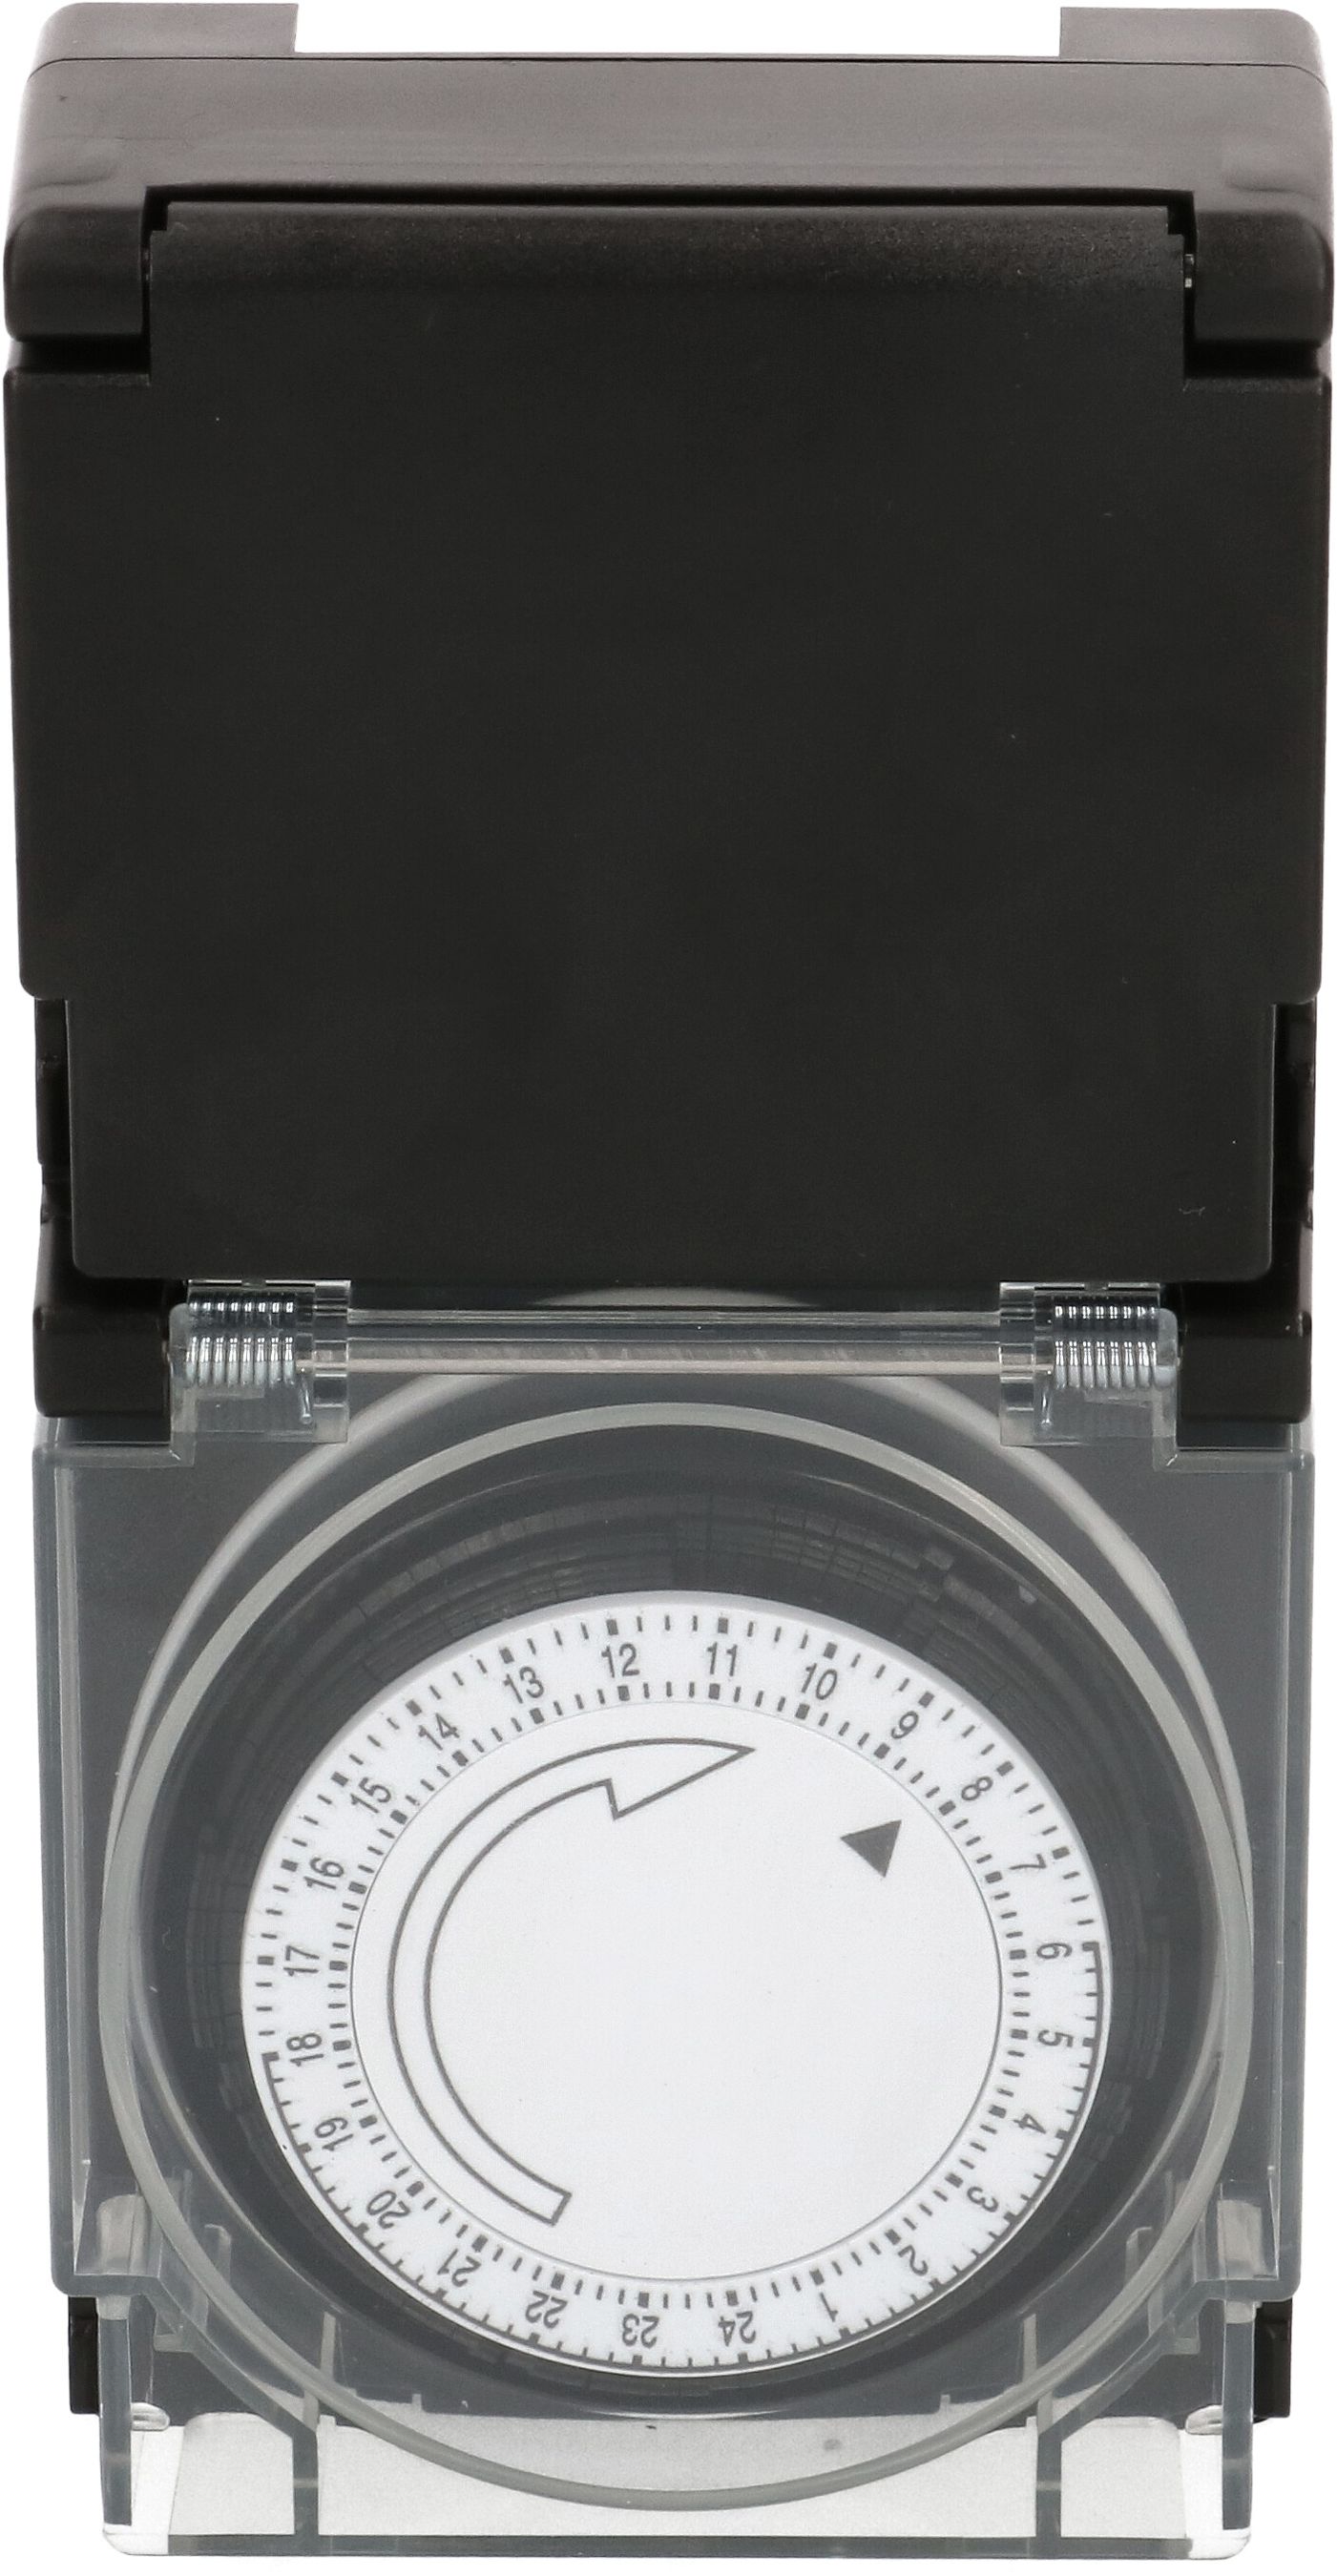 Zeitschaltuhr IP55 24h analog schwarz